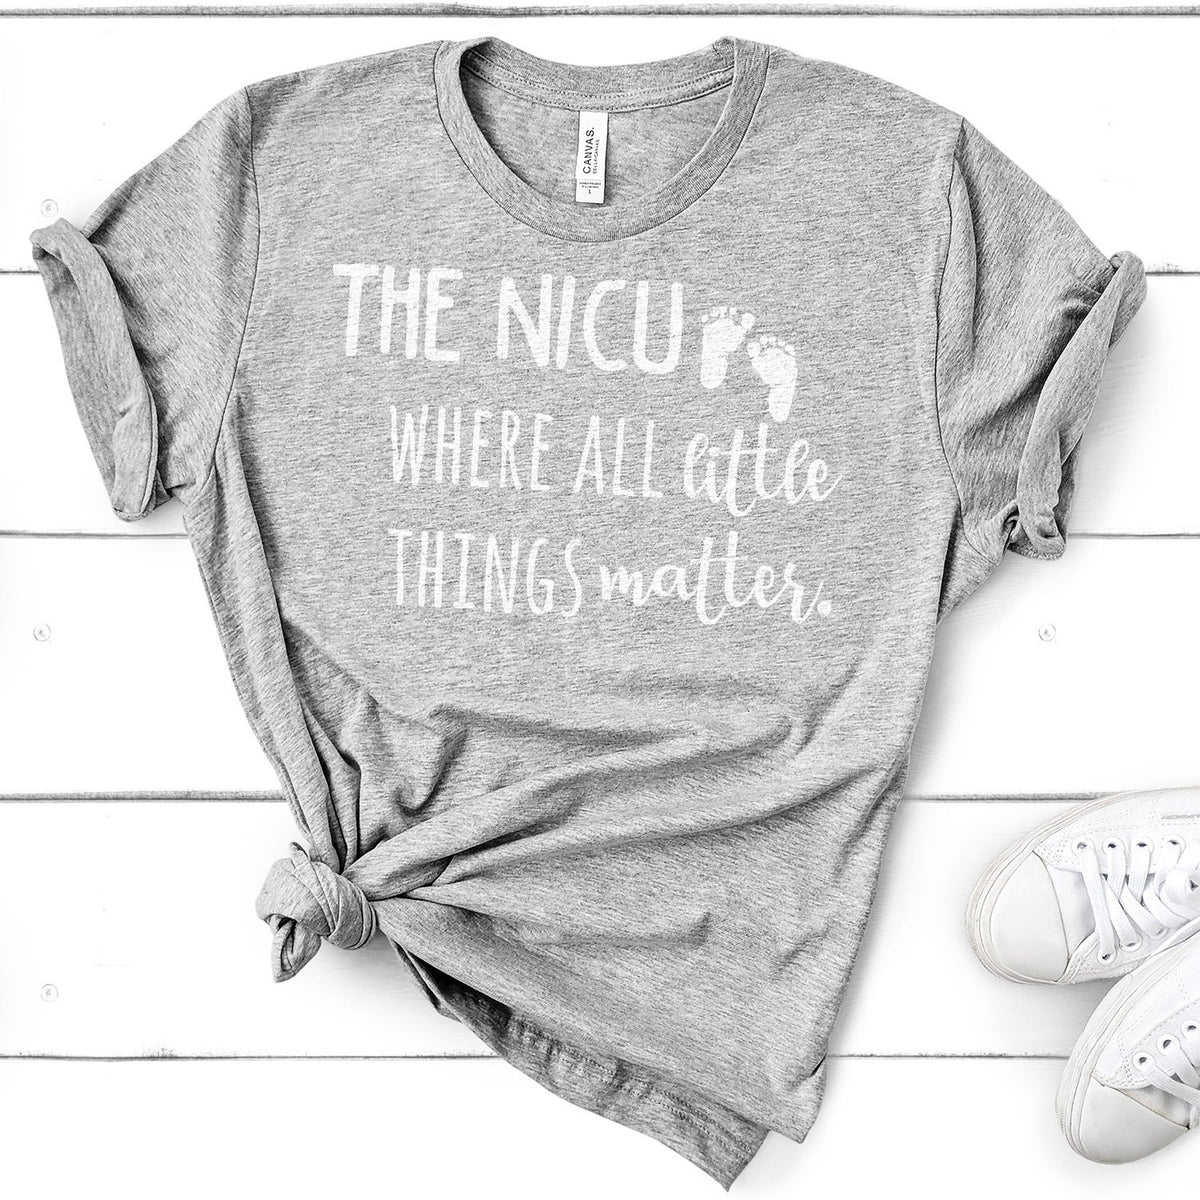 The NICU Where All Little Things Matter - Short Sleeve Tee Shirt